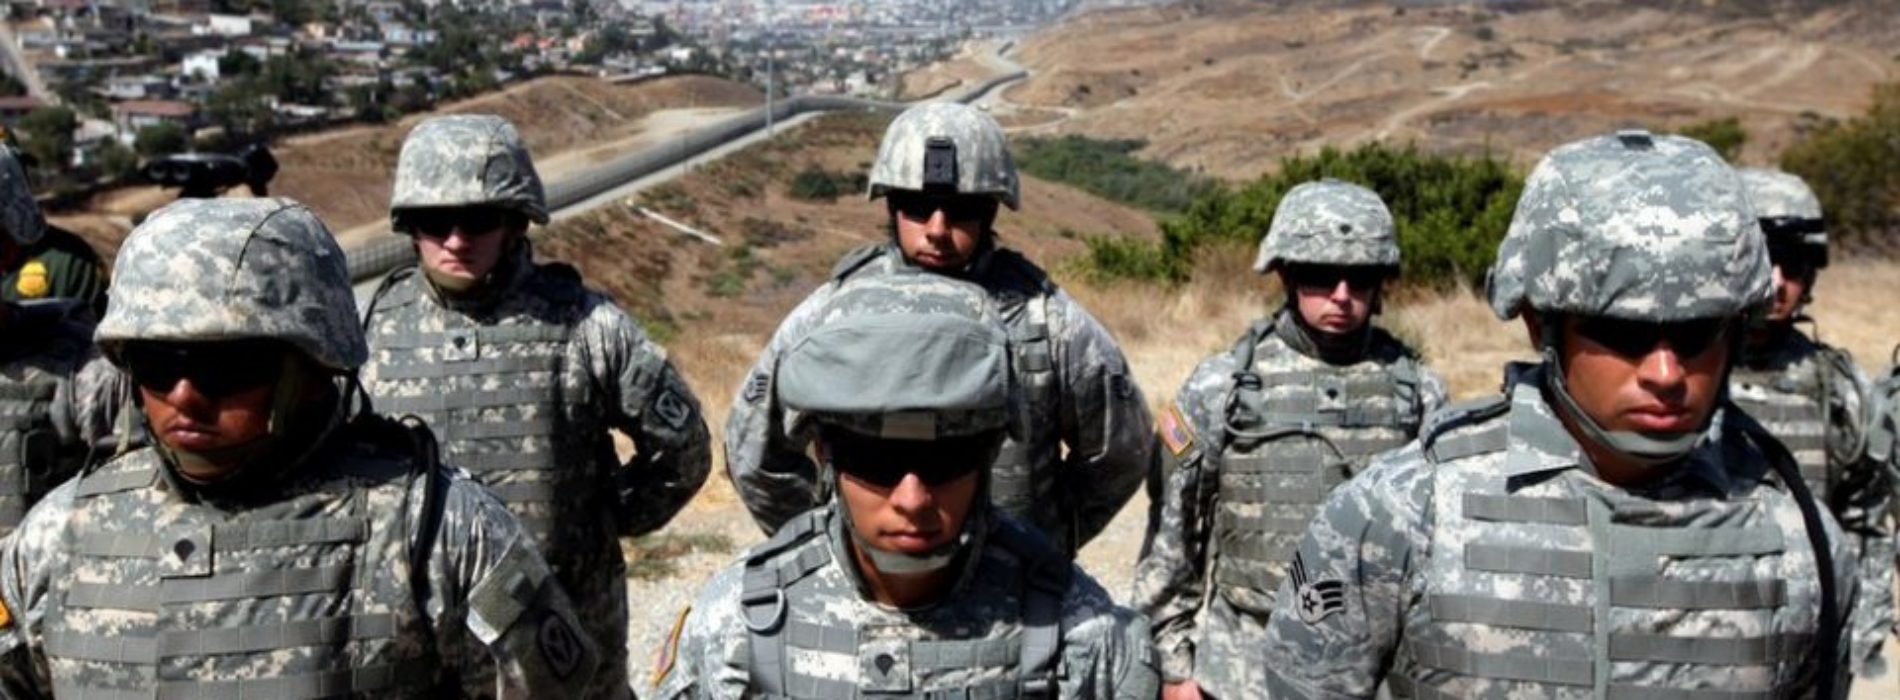 Los otros momentos en la historia en los que Estados Unidos
militarizó su frontera con México